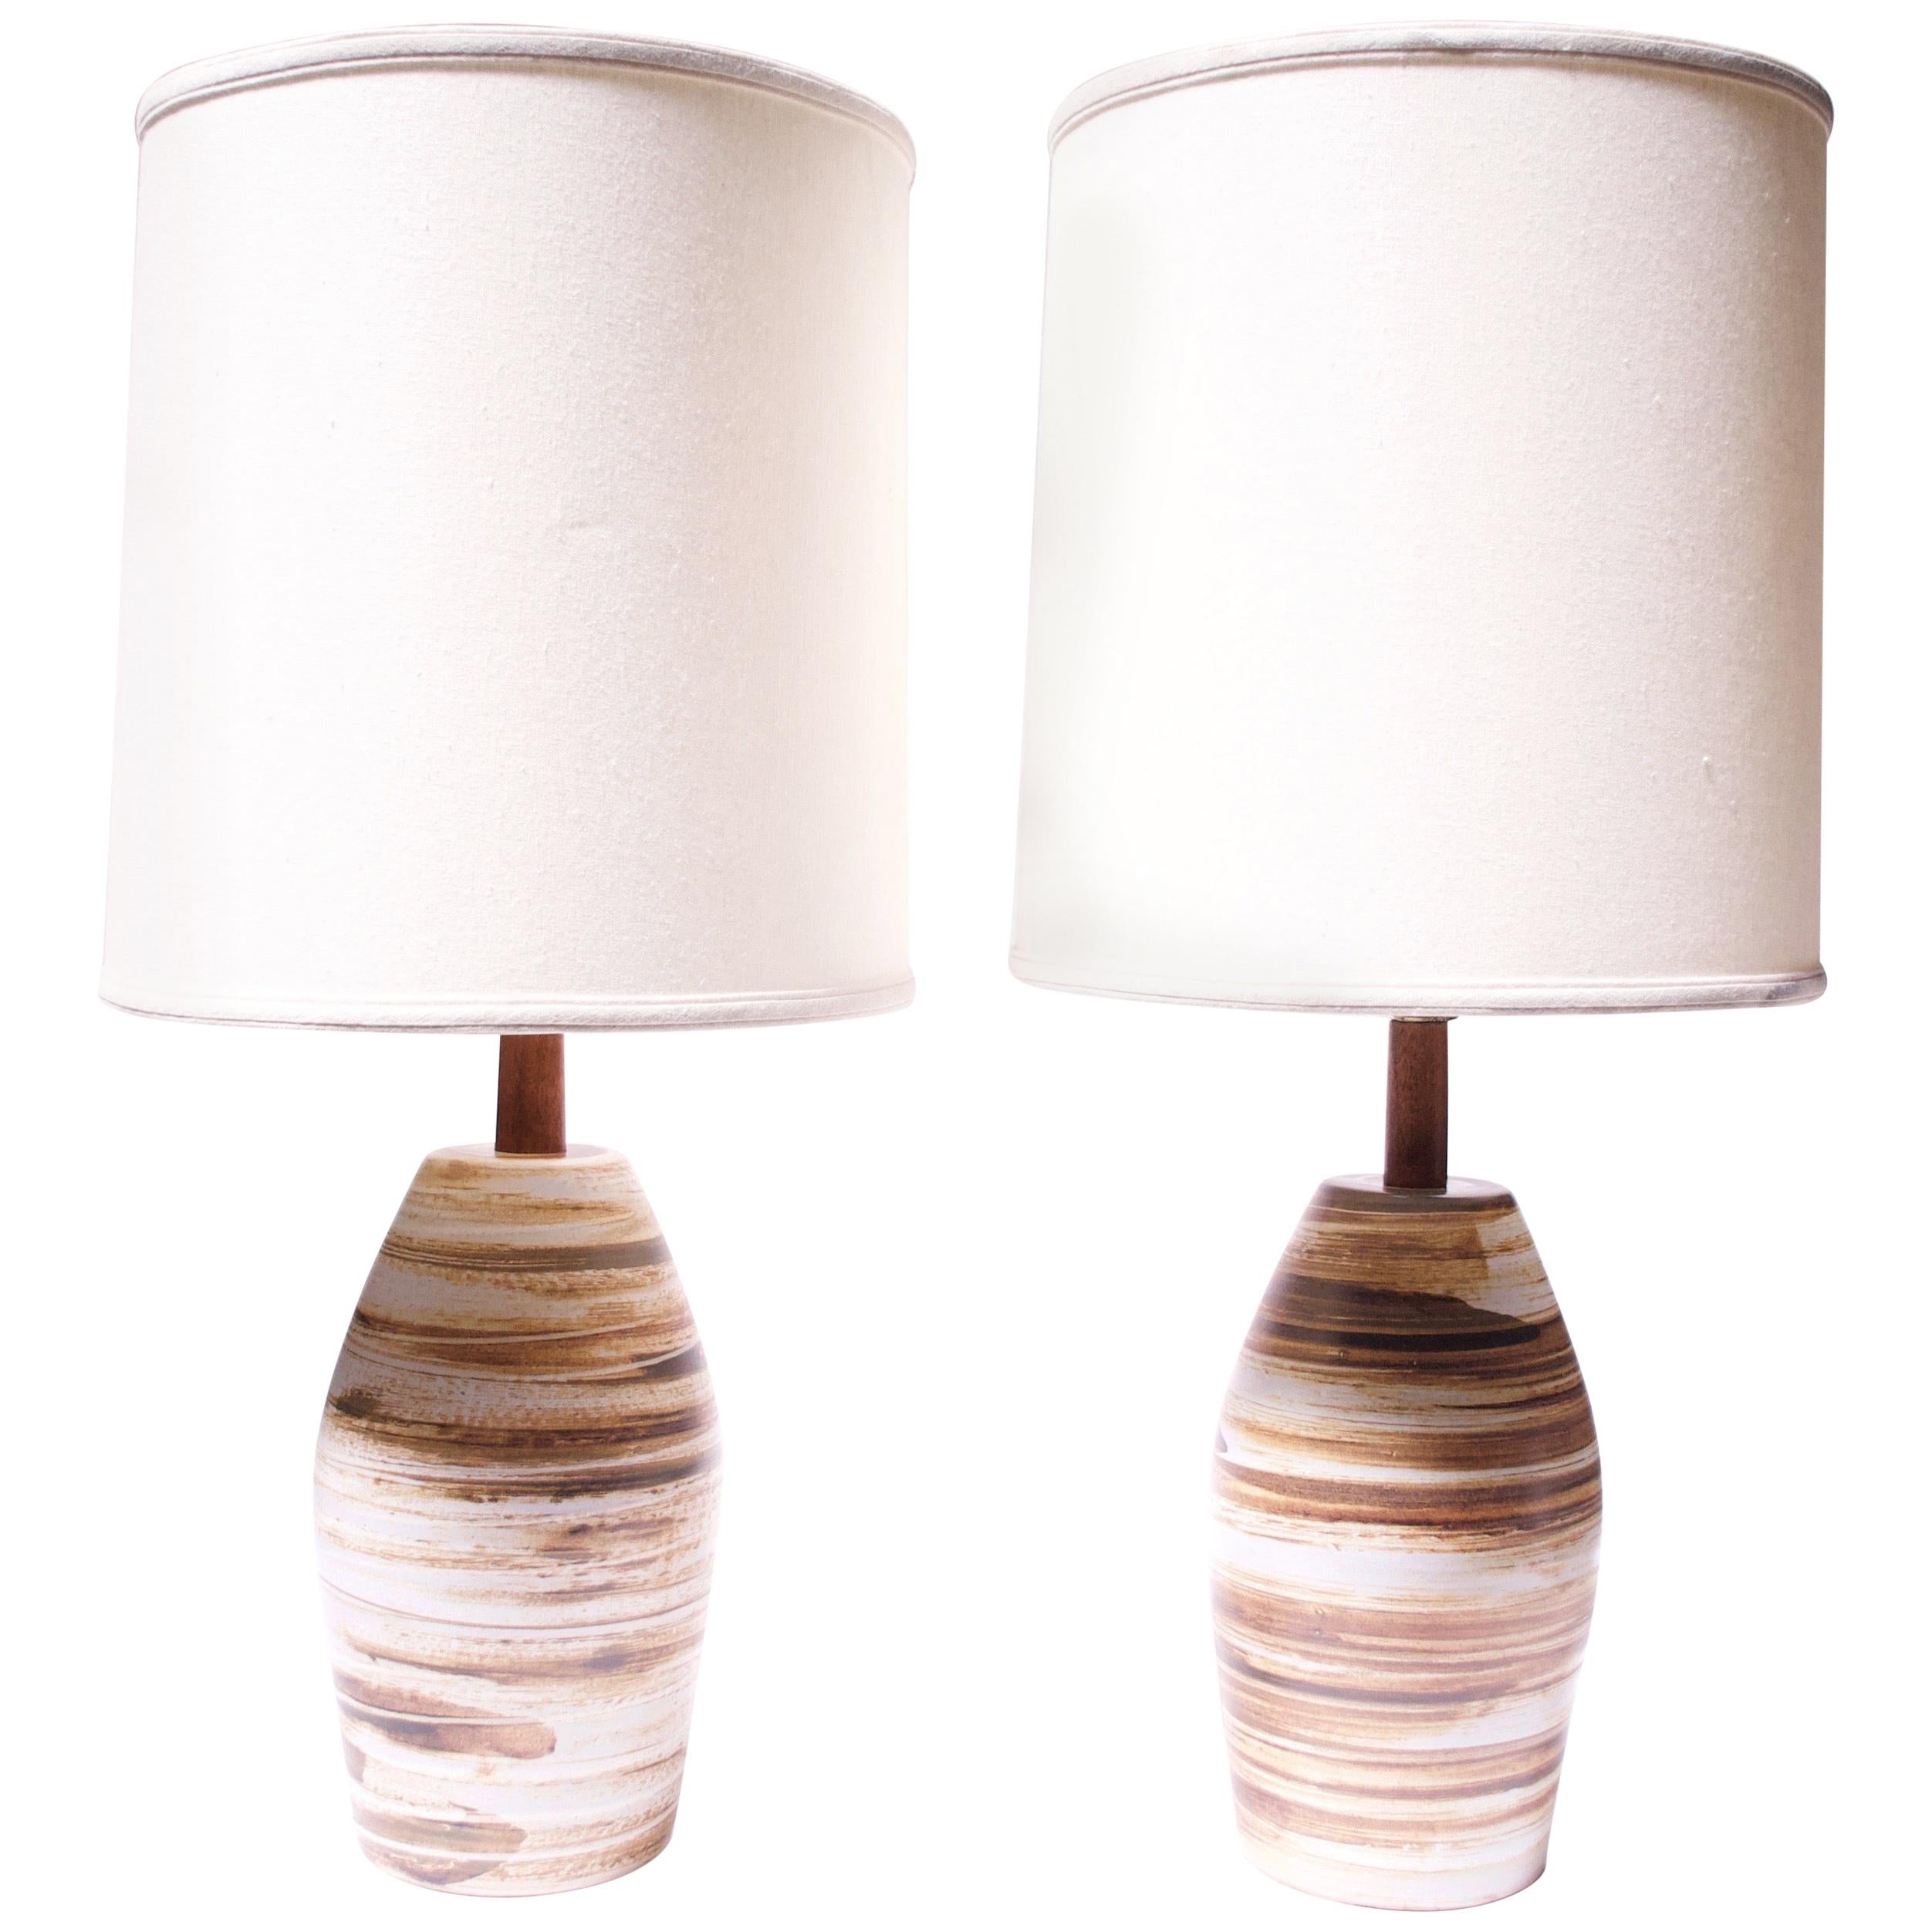 Ces lampes de table Gordon et Jane Martz pour Marshall Studios (modèle n° 267-28-D116A) présentent une base mate avec des tourbillons contrastés de beige, brun, crème et vert foncé. La signature gravée 